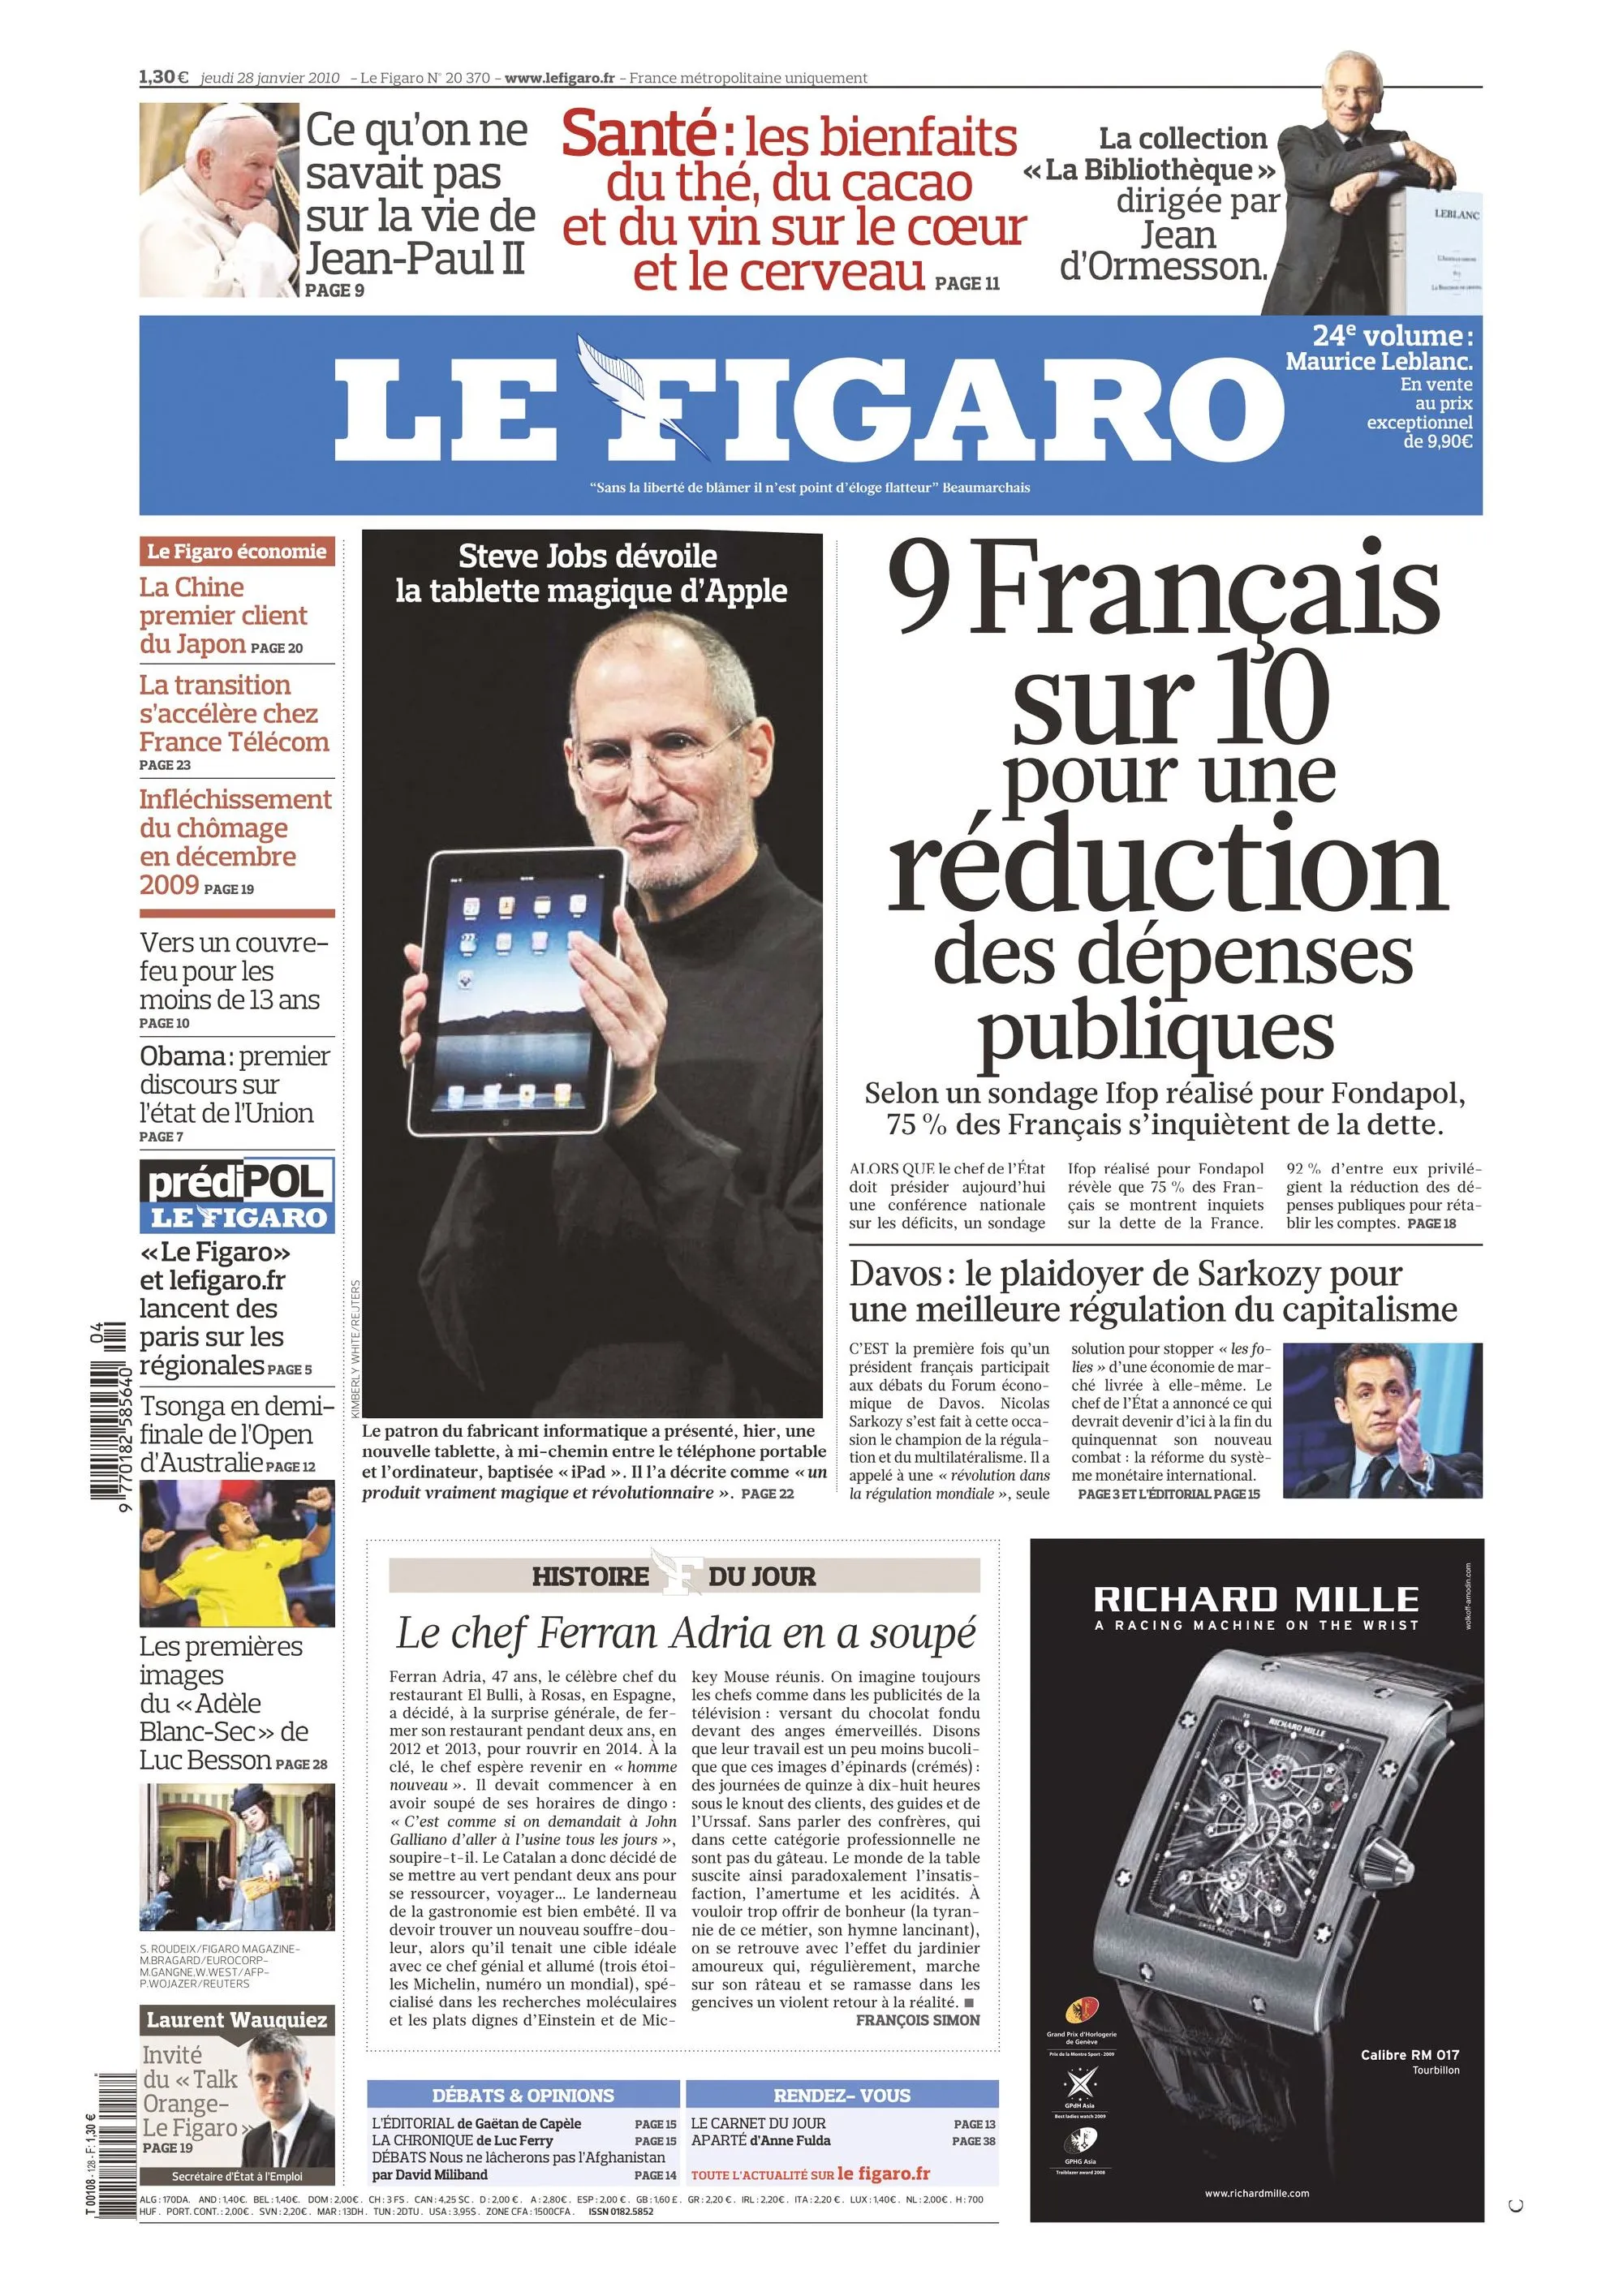 Une du journal Le Figaro du 28 janvier 2010.